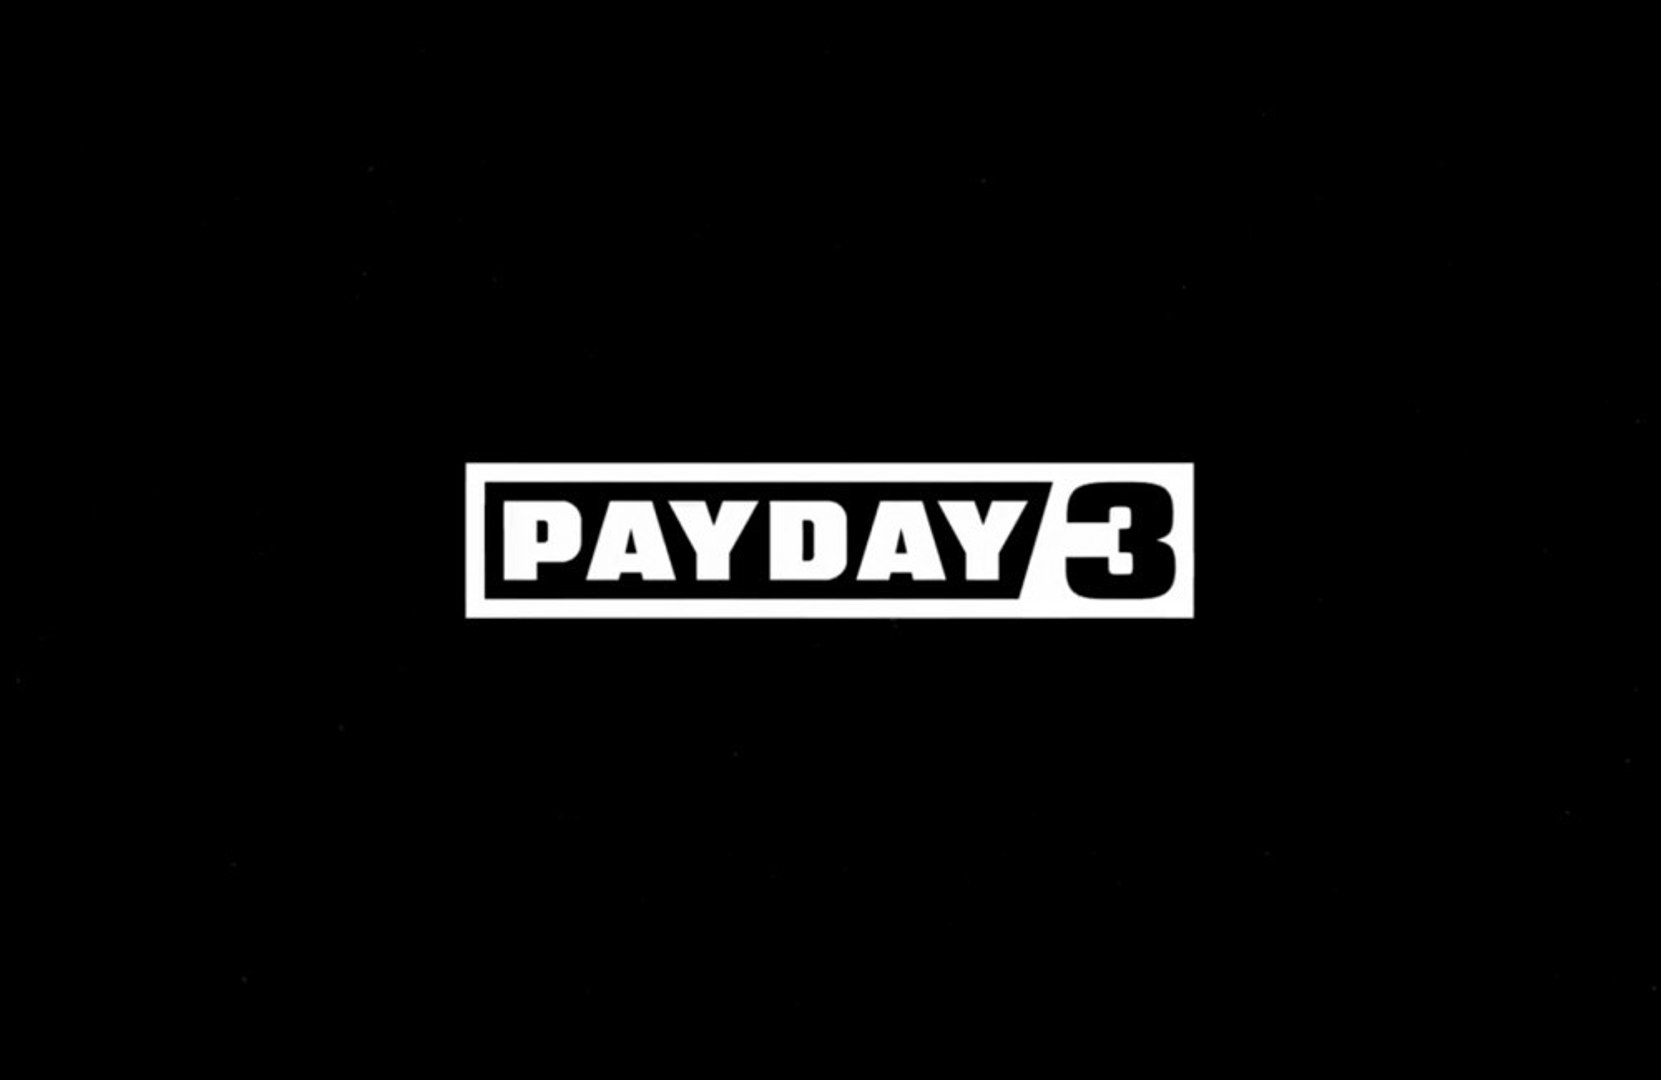 Payday 3 requisitará conexão constante com a internet, afirma